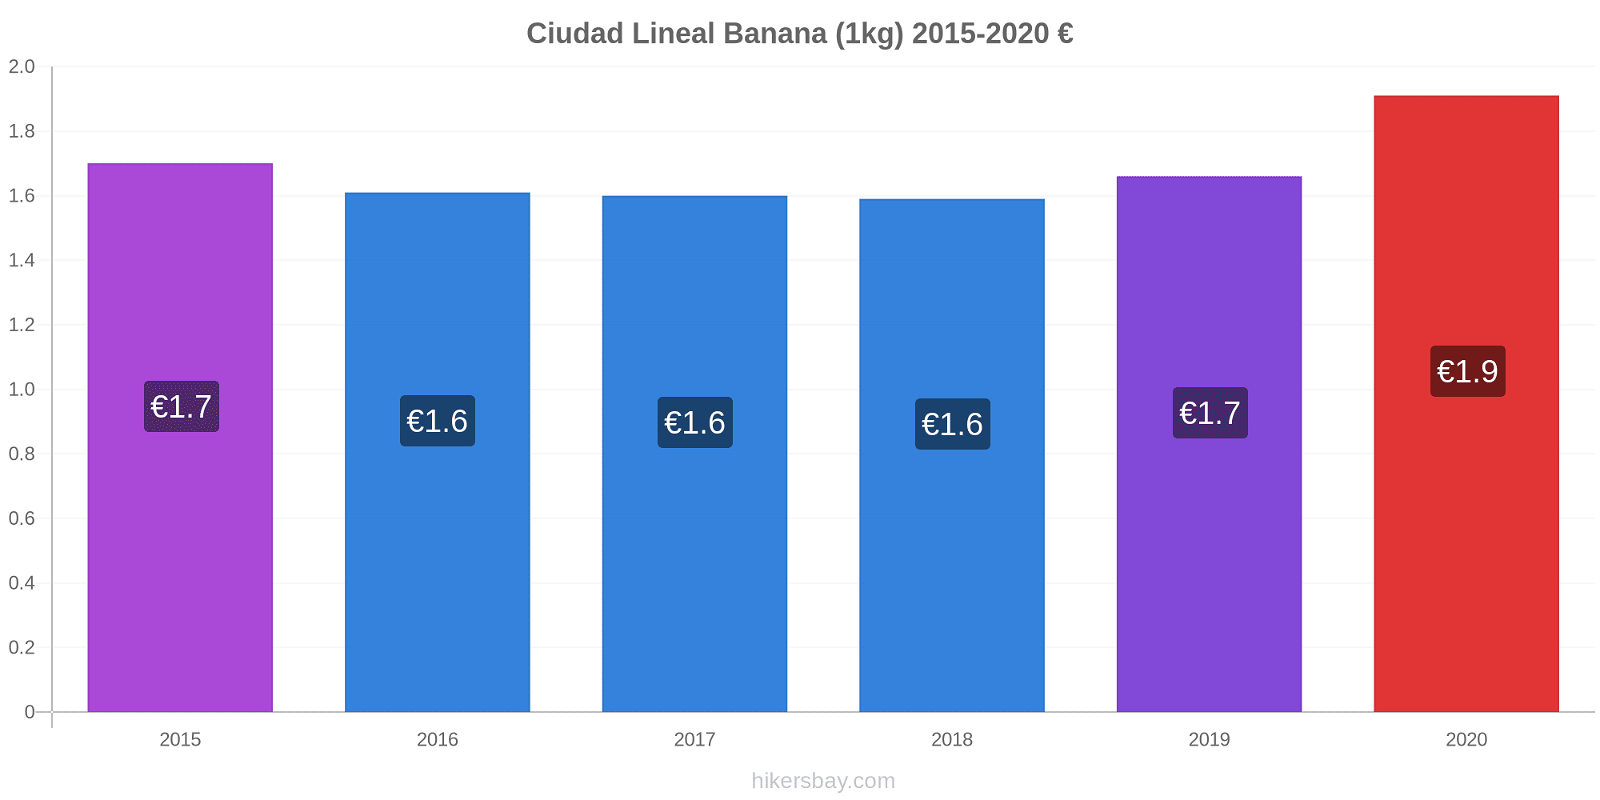 Ciudad Lineal modificări de preț Banana (1kg) hikersbay.com